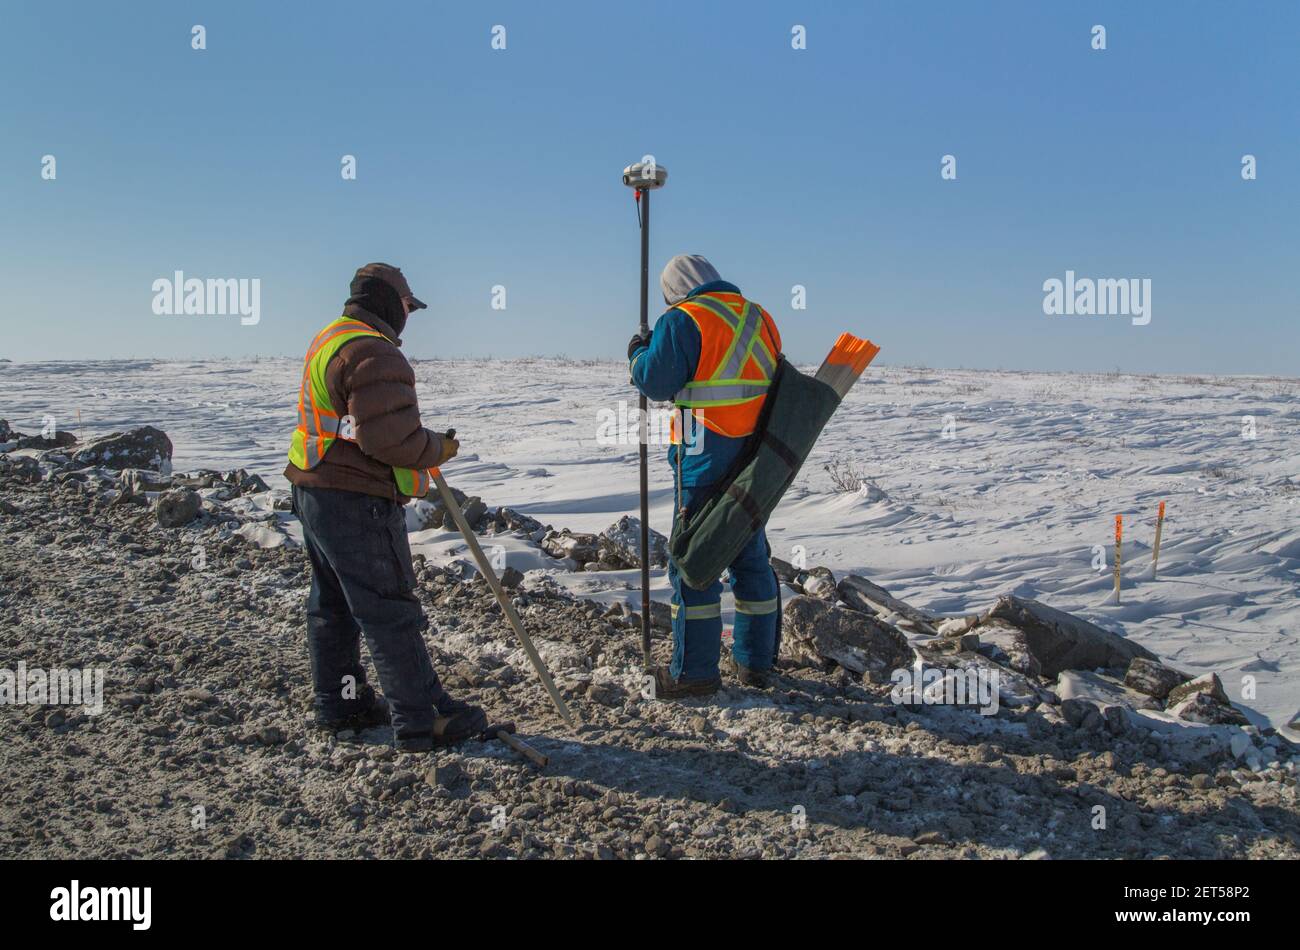 Deux travailleurs qui arpentent la route Inuvik-Tuktoyaktuk, construction hivernale, Territoires du Nord-Ouest, Arctique canadien, avril 2014. Banque D'Images